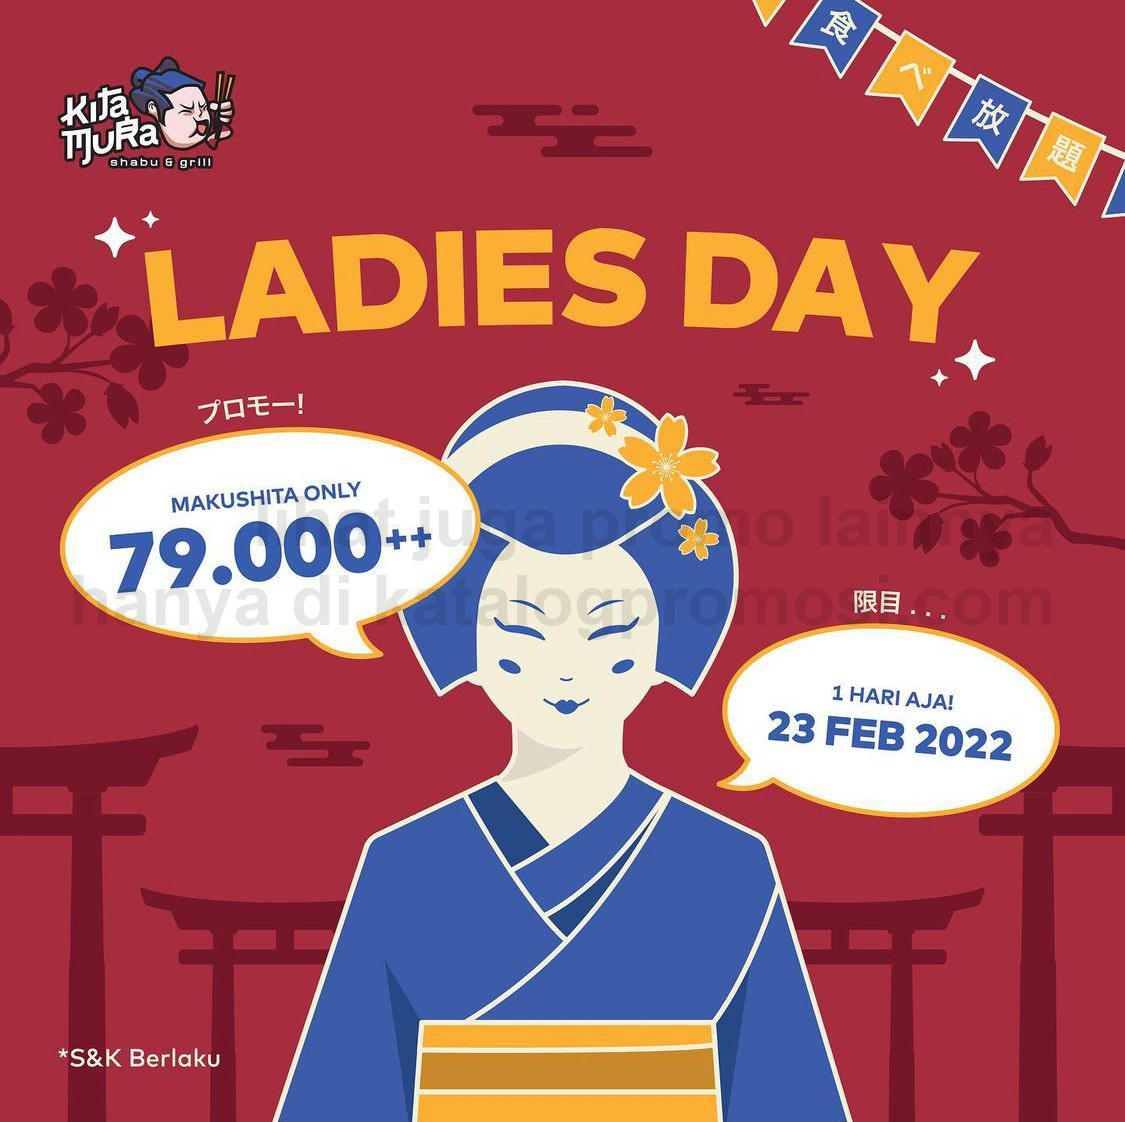 Promo KITAMURA LADIES DAY - HARGA SPESIAL Rp. 79.000++ untuk paket Makushita 